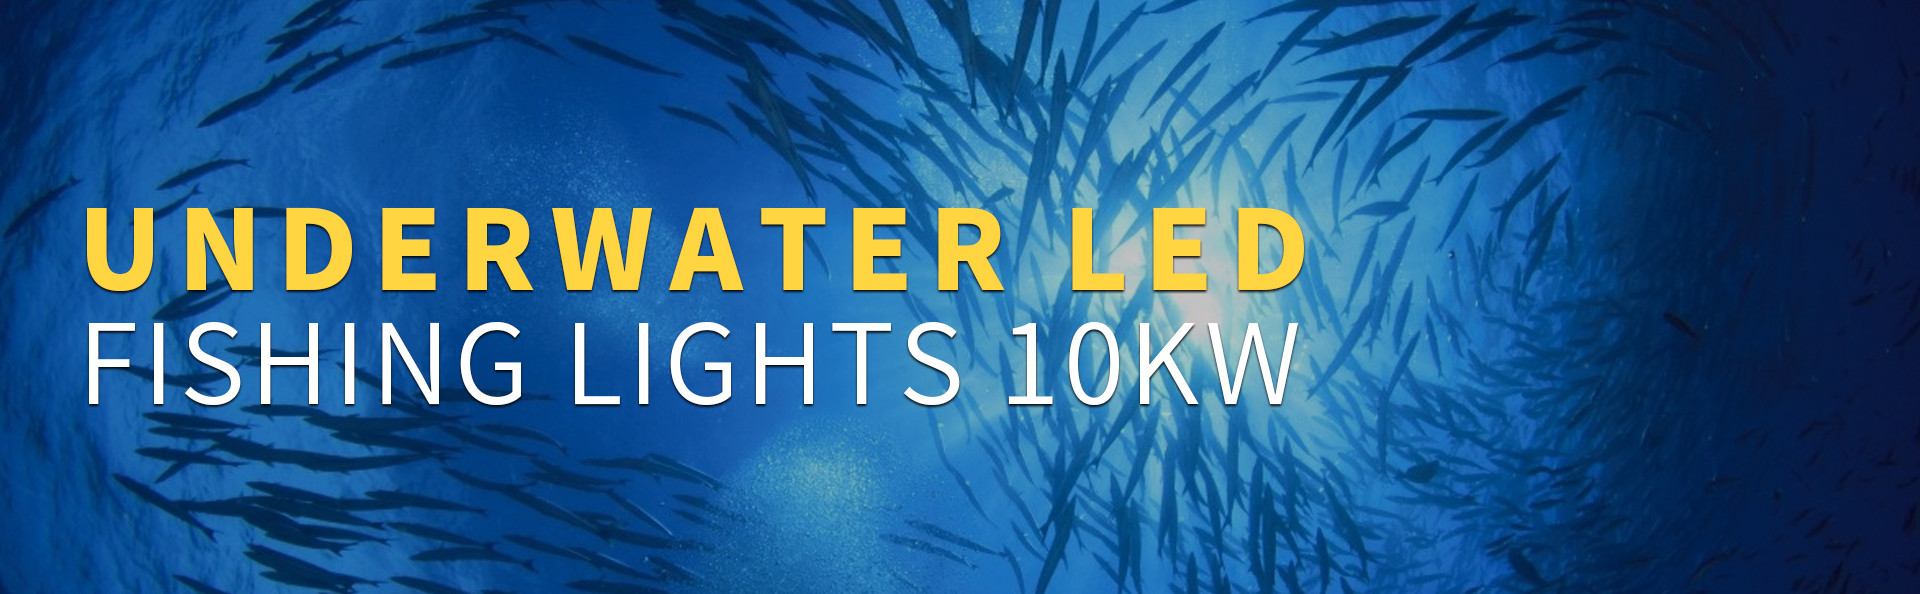 underwater fishing lights